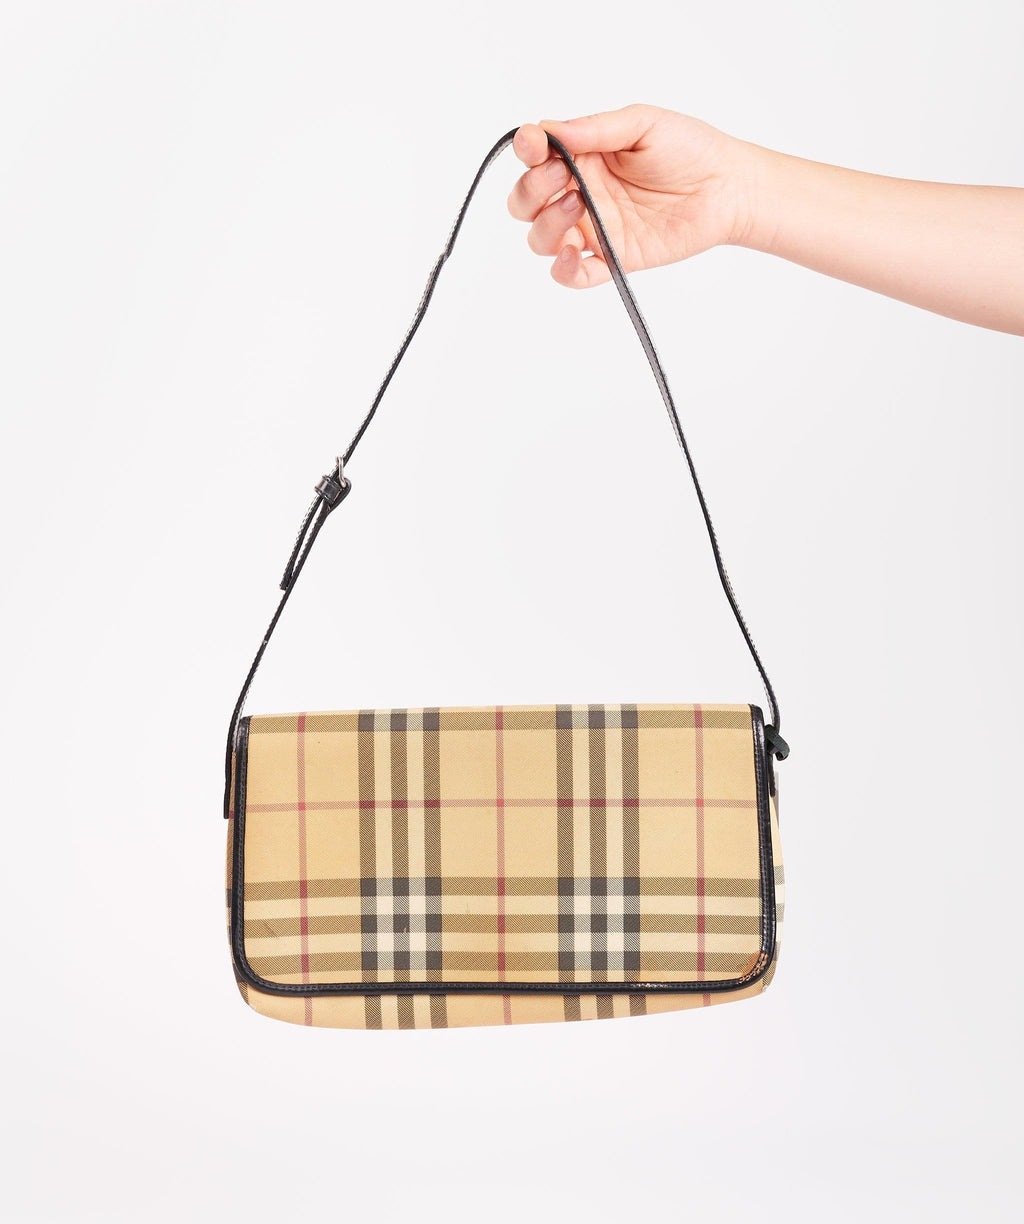 Burberry Pochette Bag – Beccas Bags